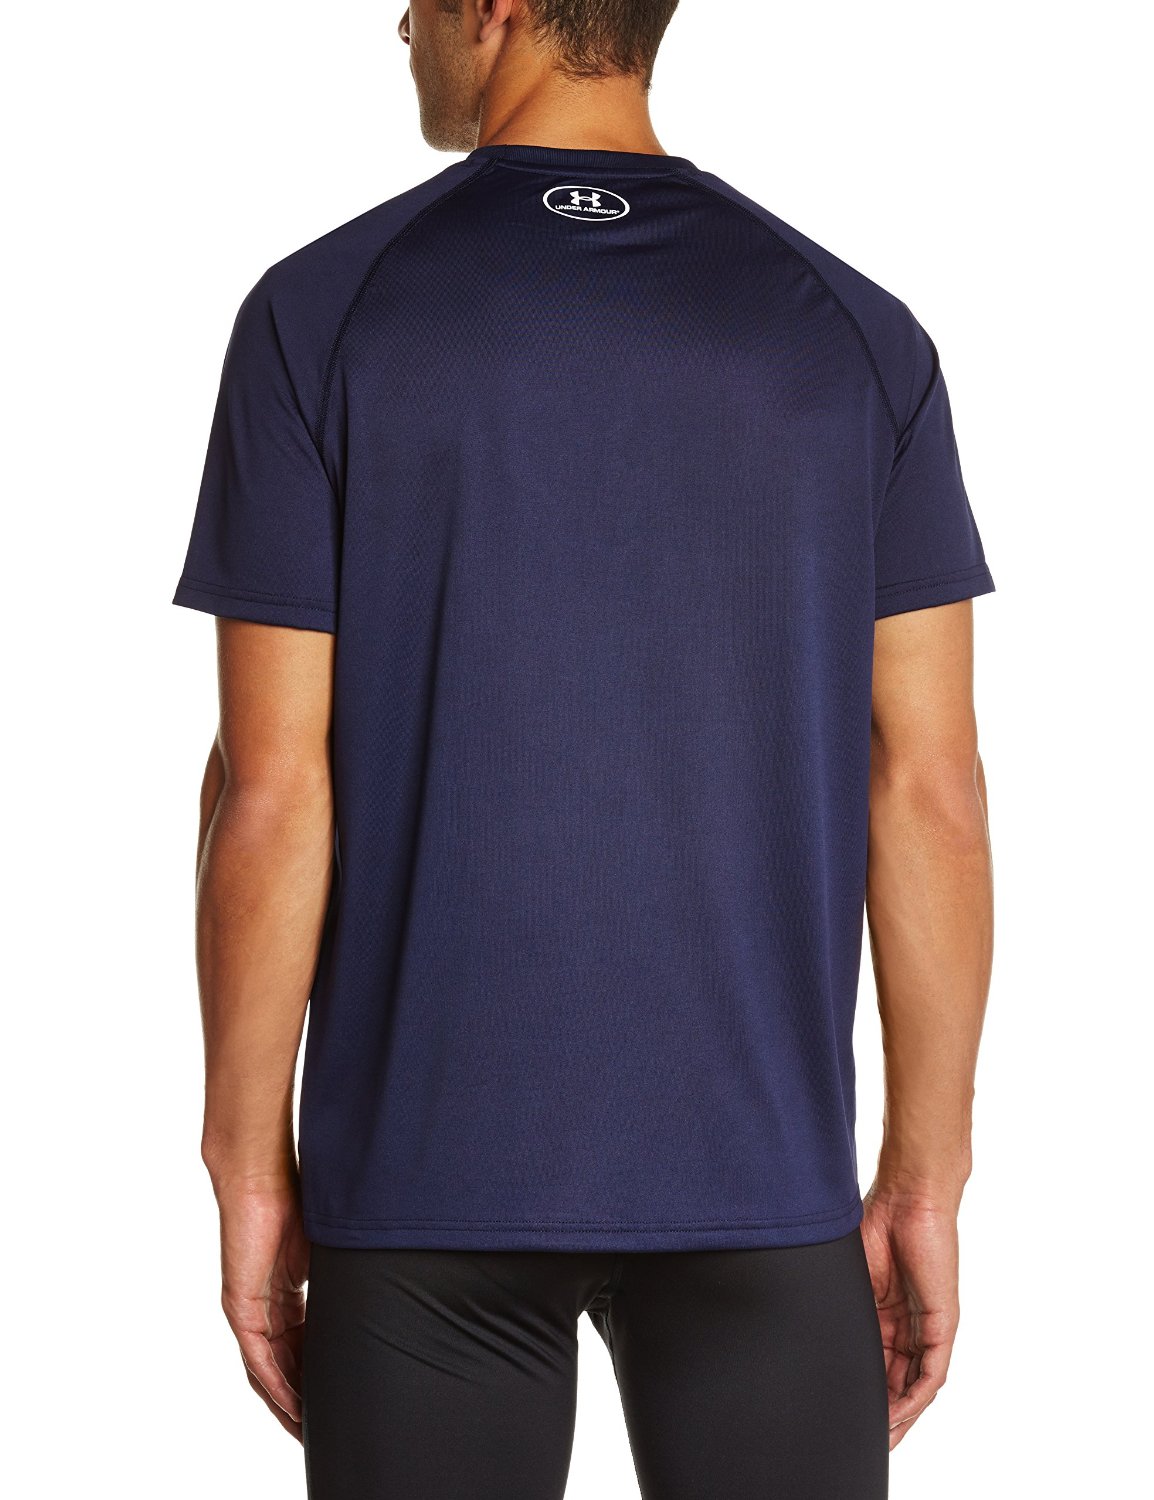 Under Armour 2015 Men's UA Tech Short Sleeve T-Shirt